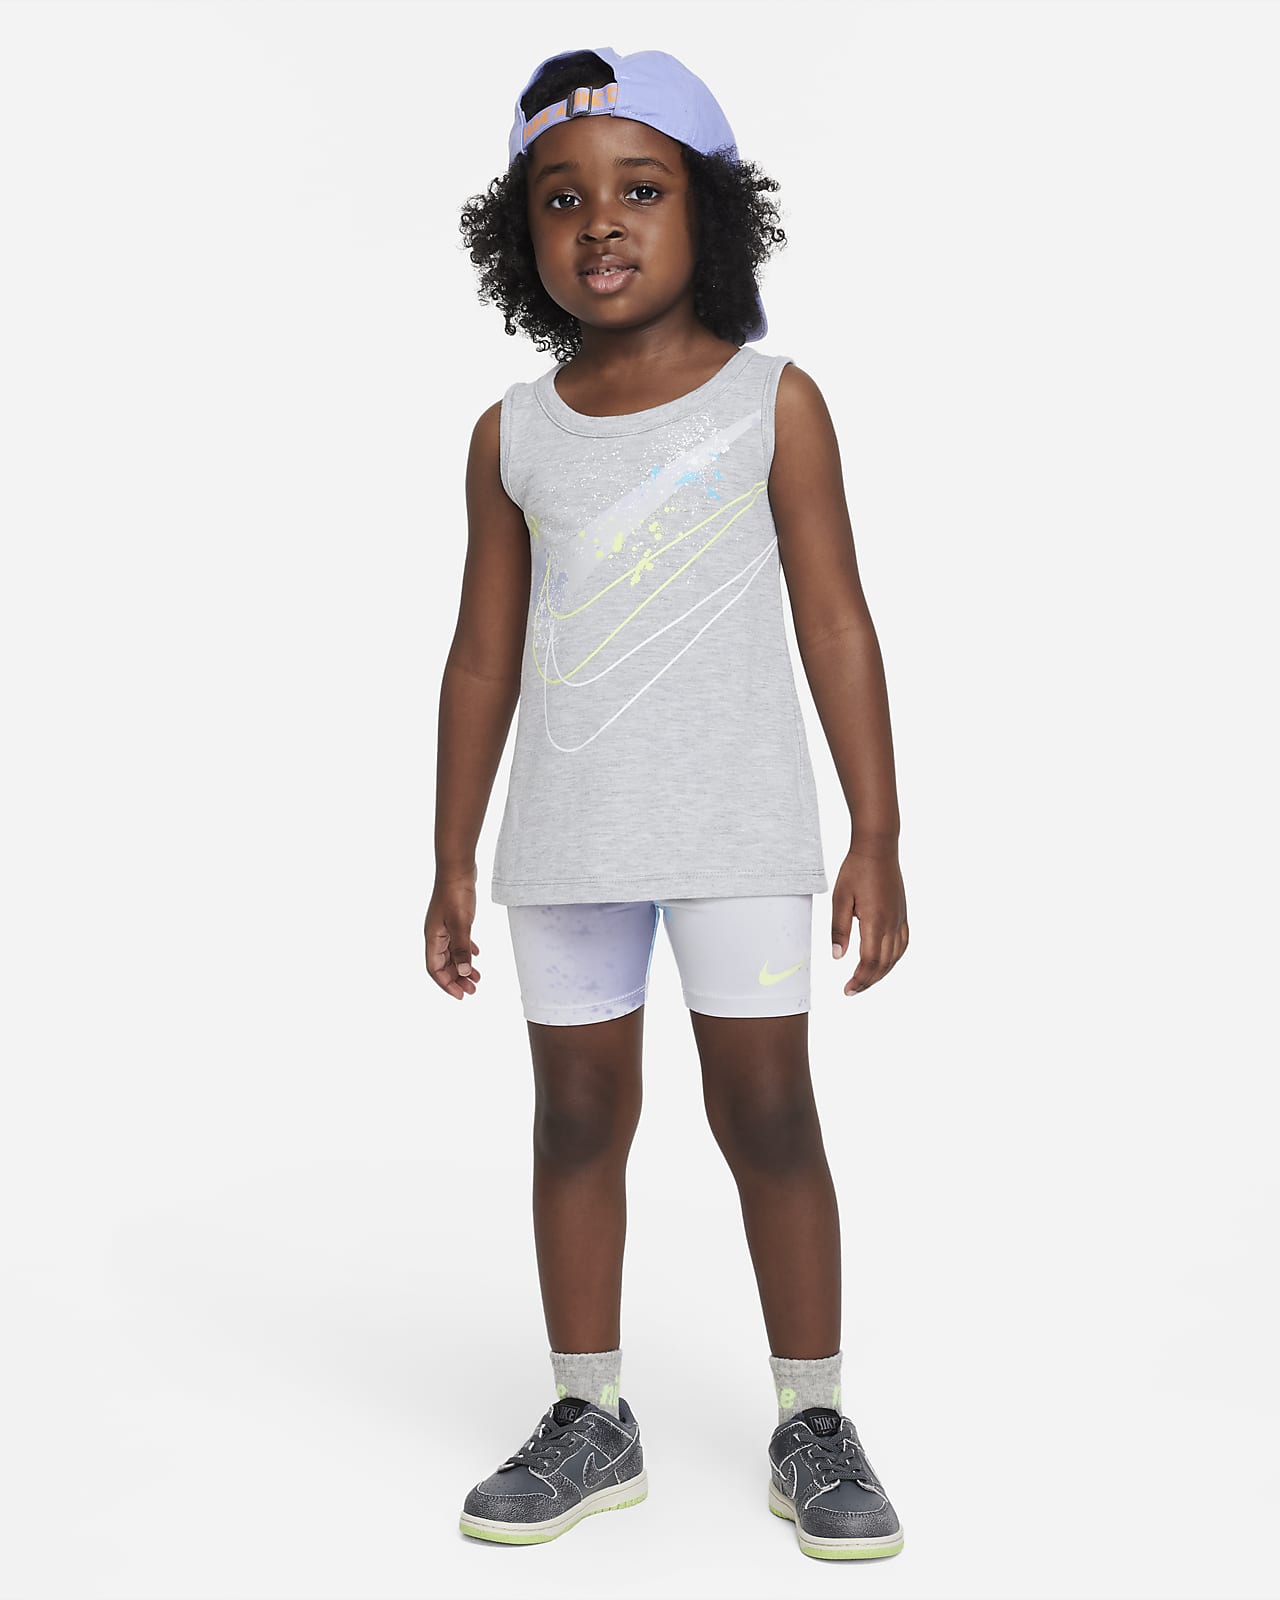 Nike "Just DIY It" Bike Shorts Set Toddler 2-piece set